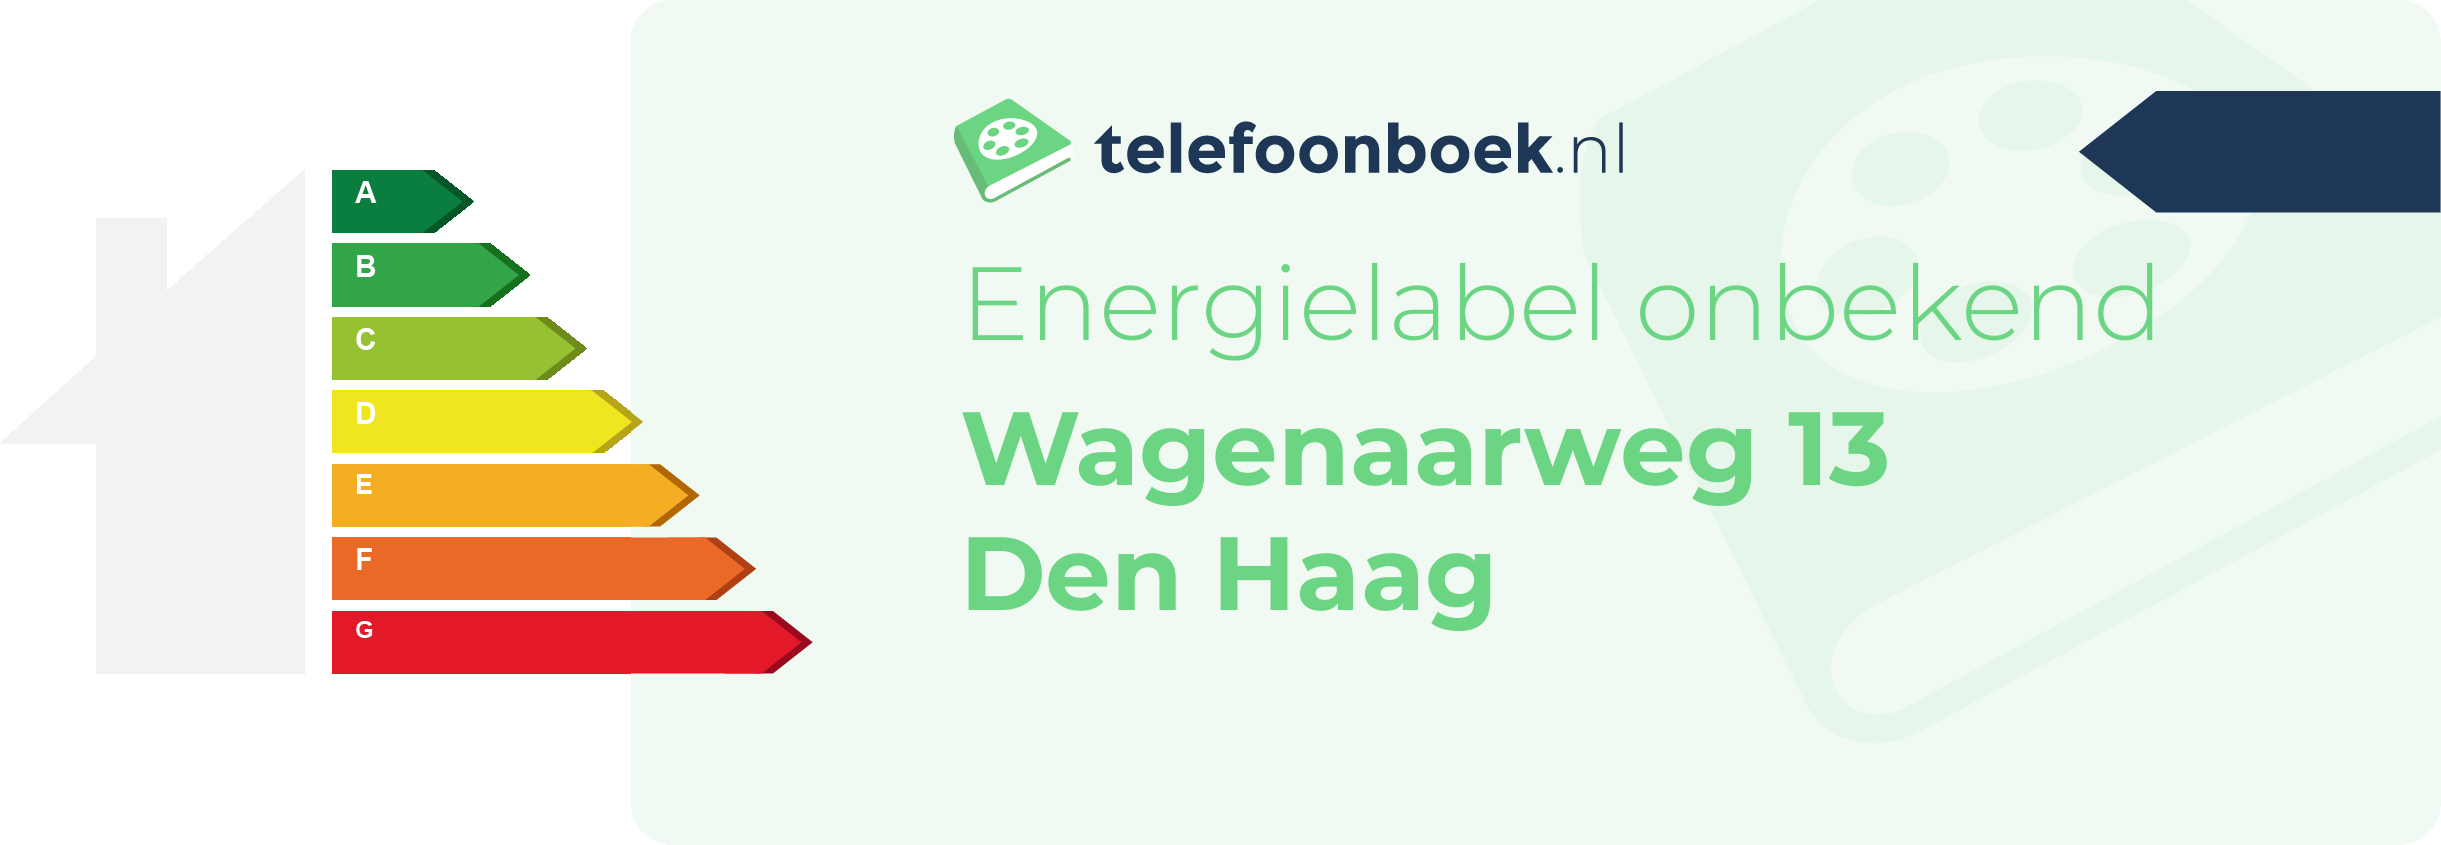 Energielabel Wagenaarweg 13 Den Haag